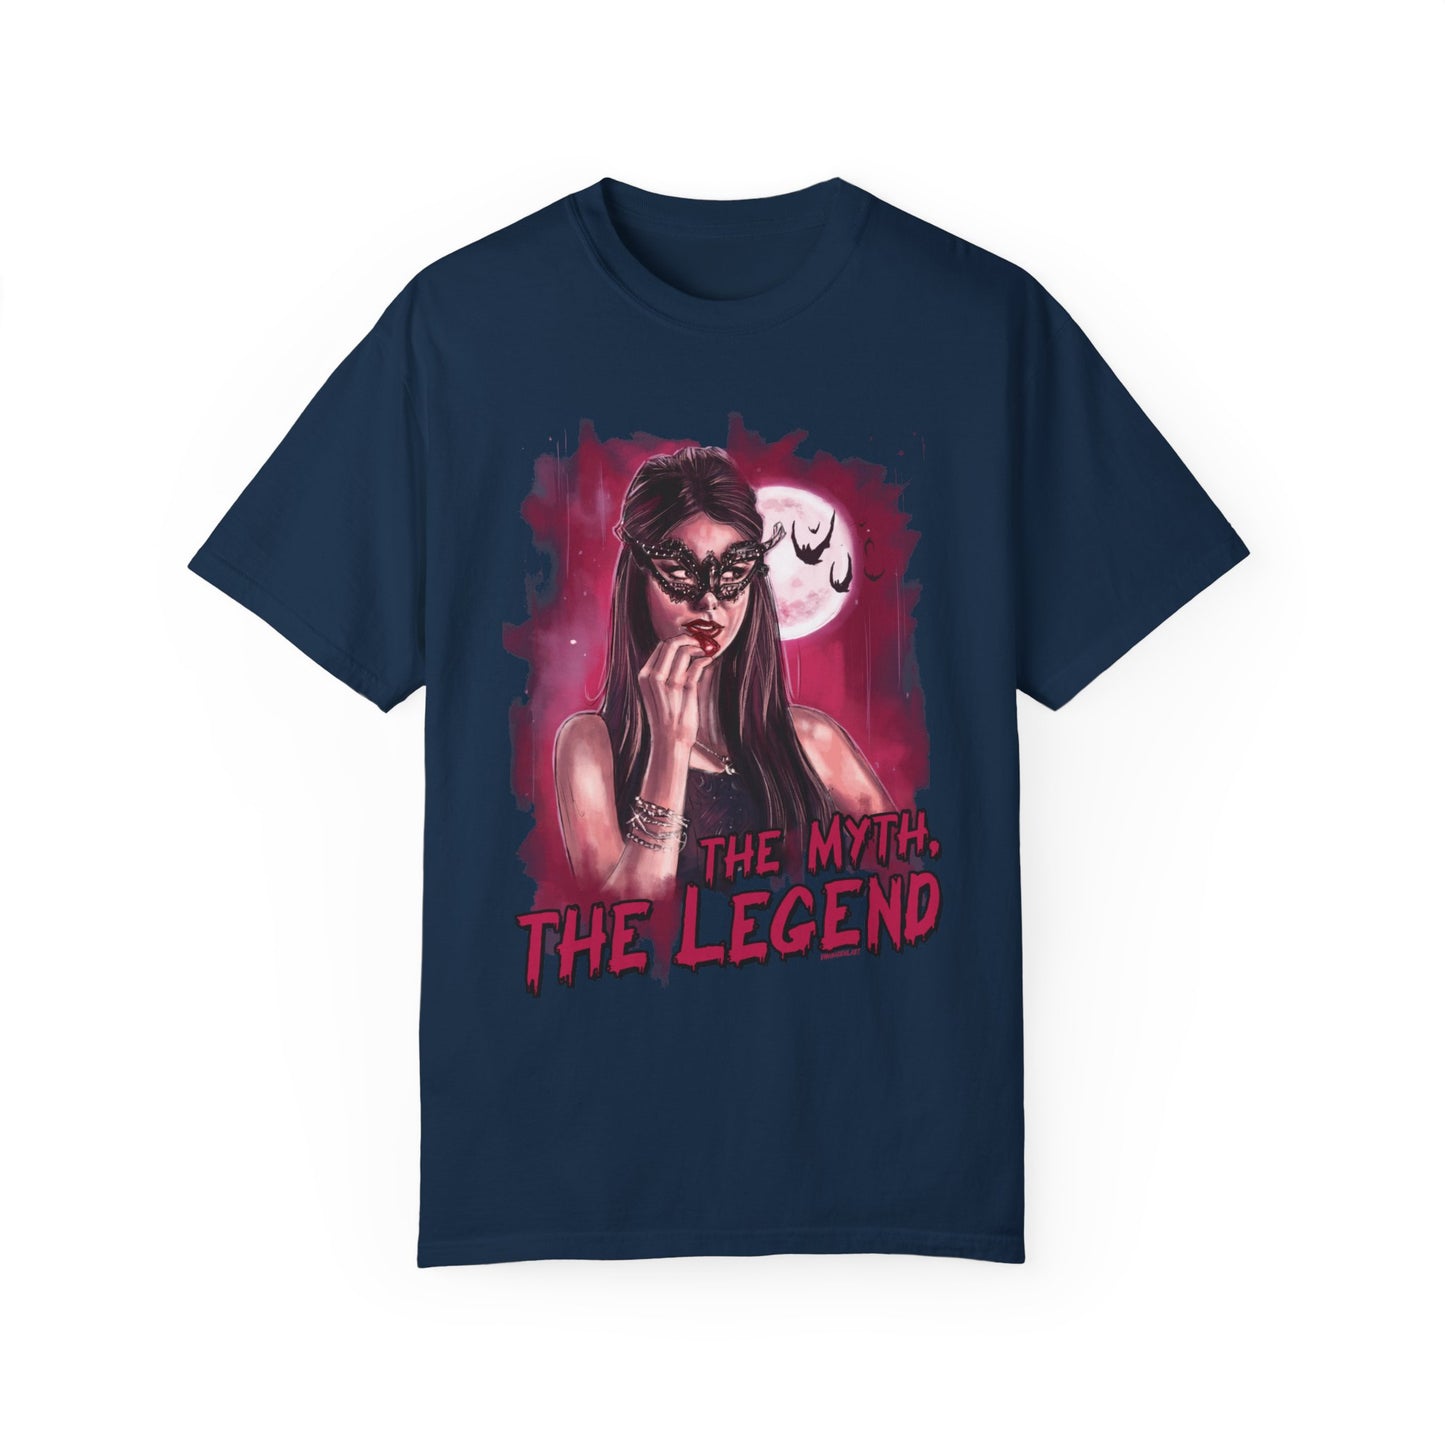 The Myth, The Legend Tshirt